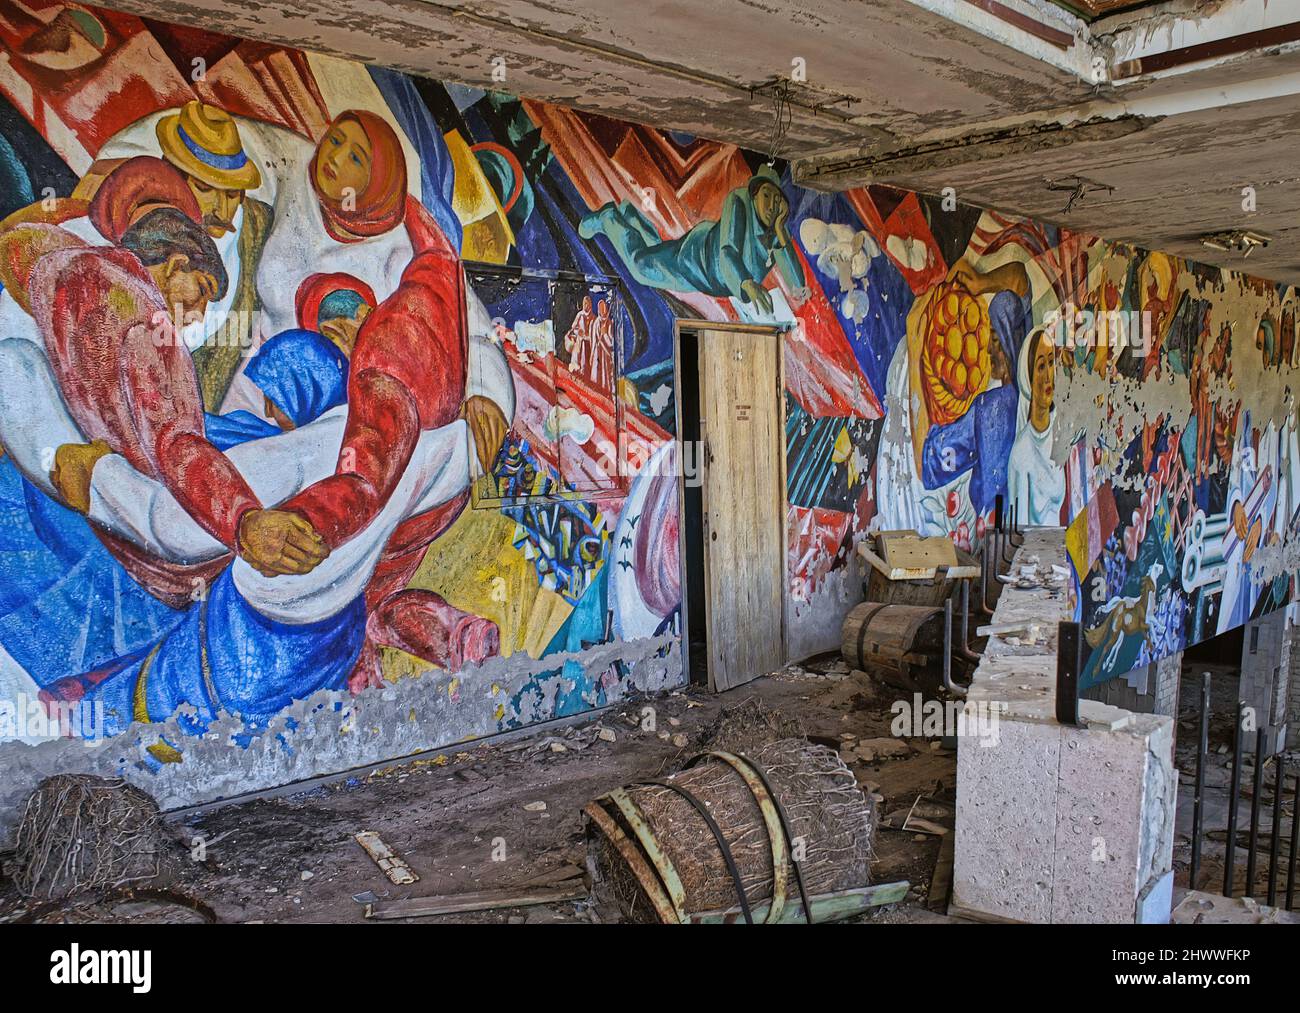 Uno sguardo inquietante a ciò che rimane delle strutture 'radioattive' della città fantasma di Pripyat dove si è verificato il famoso incidente nucleare di Chernobyl Foto Stock